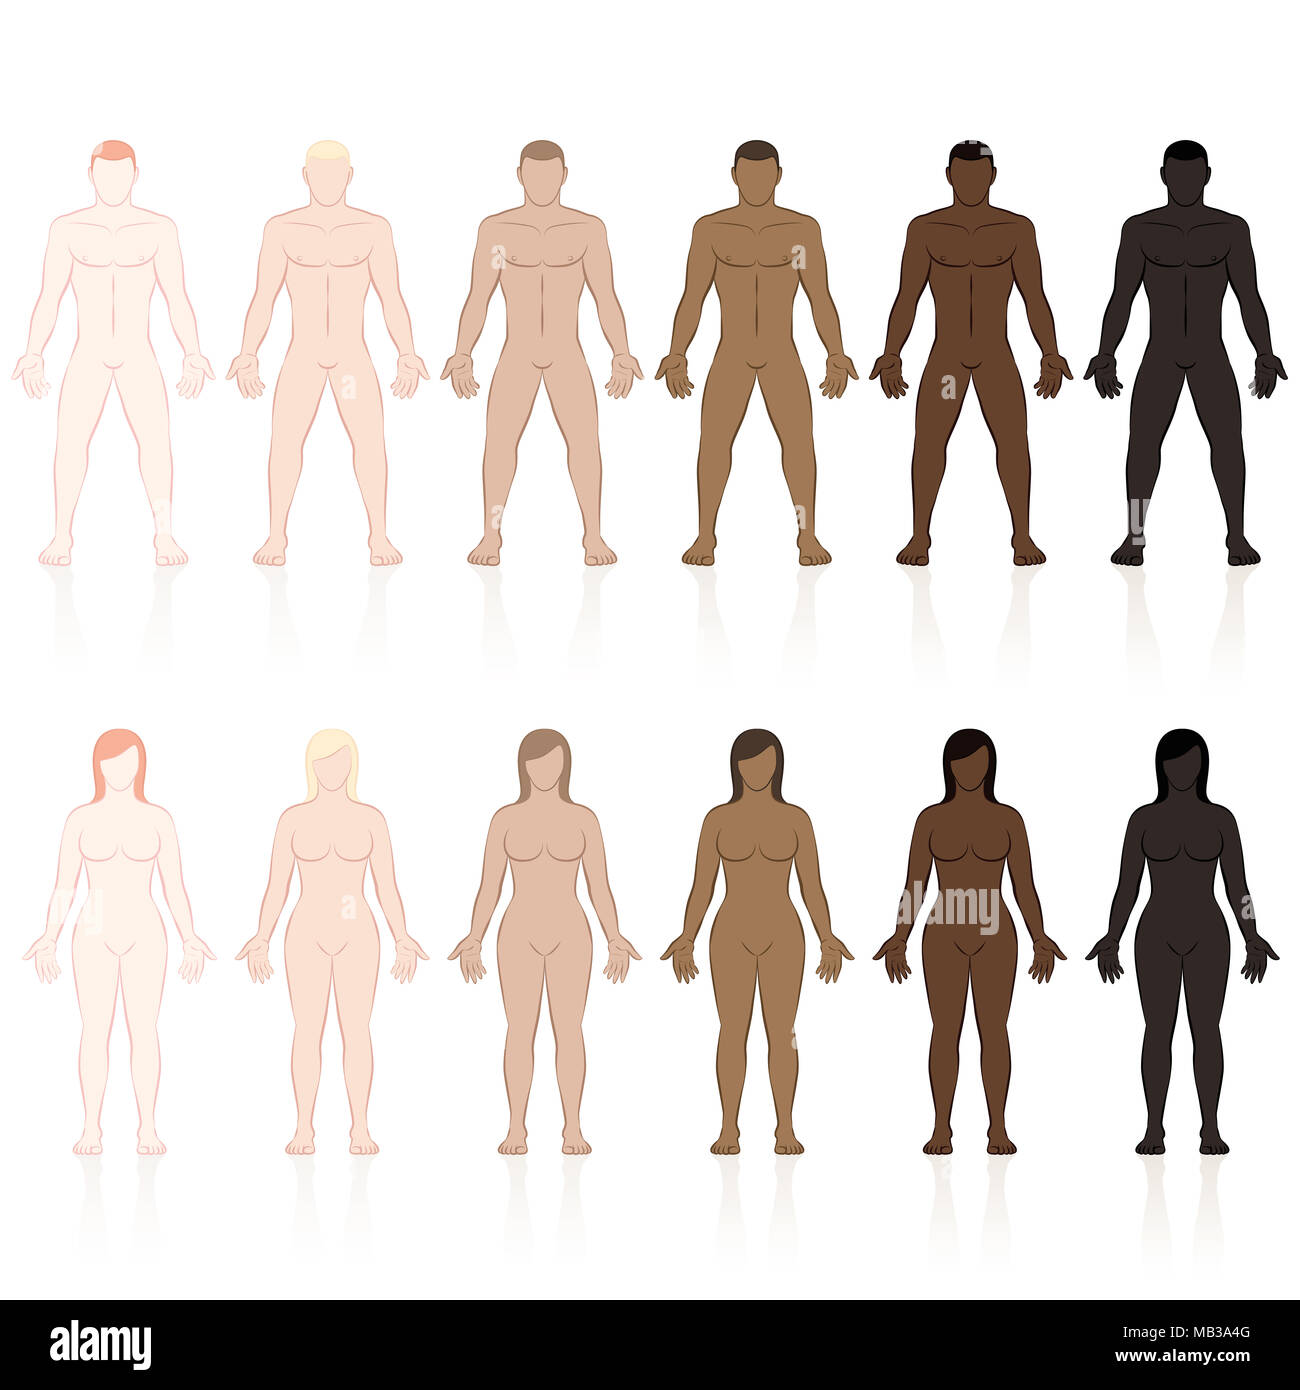 Les organes mâles et femelles avec différents types de peau. Très juste, équitable, moyen, olive, brun et noir. Vector illustration isolé sur fond blanc. Banque D'Images